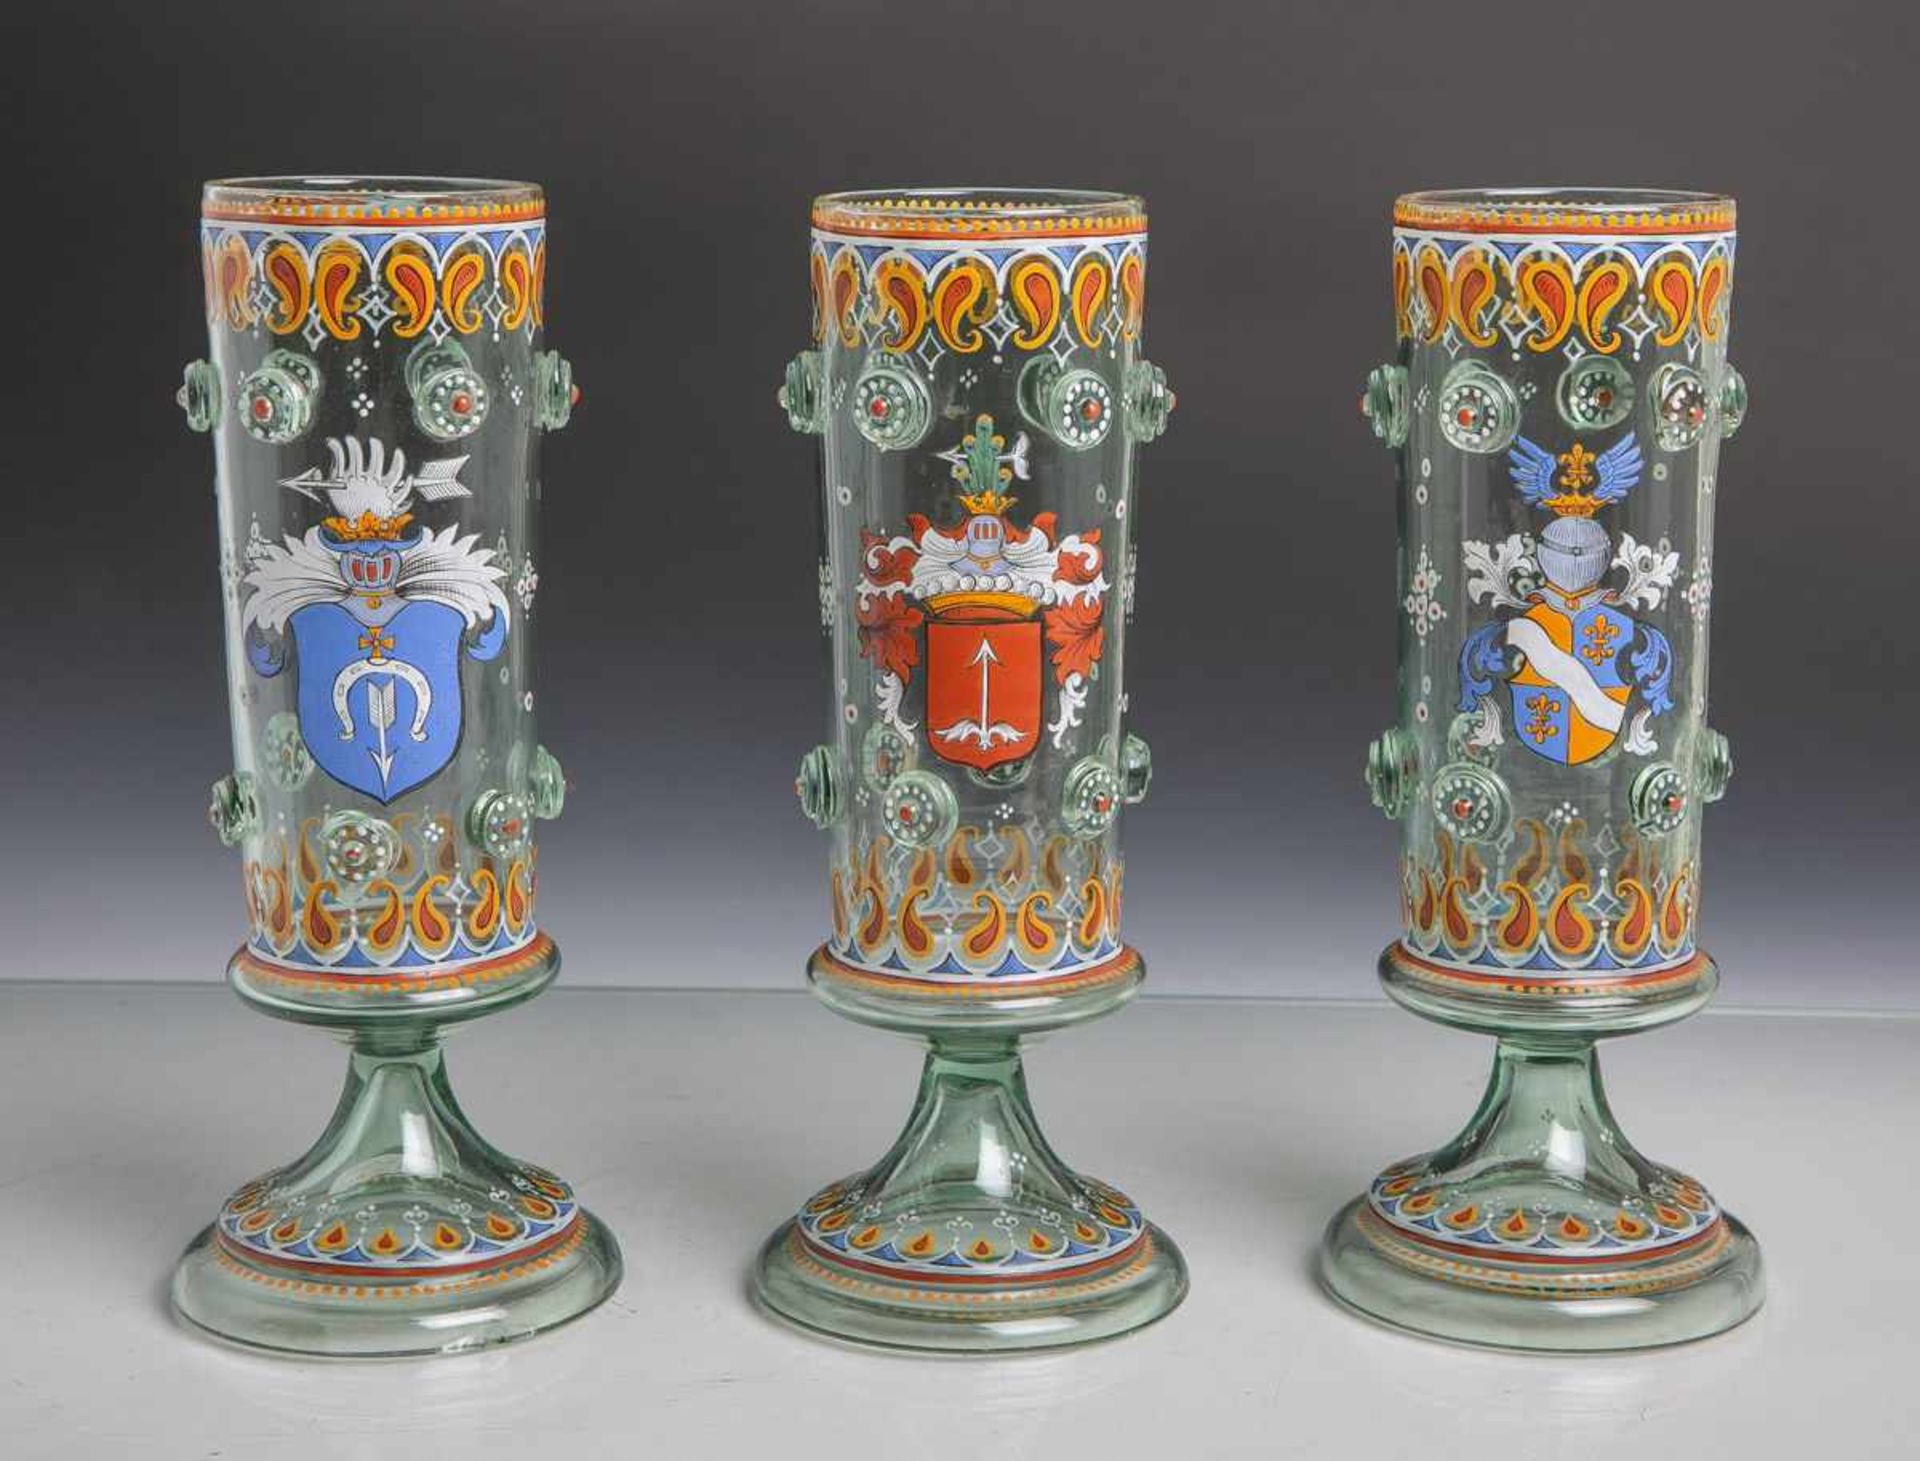 Konvolut von 3 Pokalgläsern, sog. Wappengläser (20. Jahrhundert), grünliches Glas m.